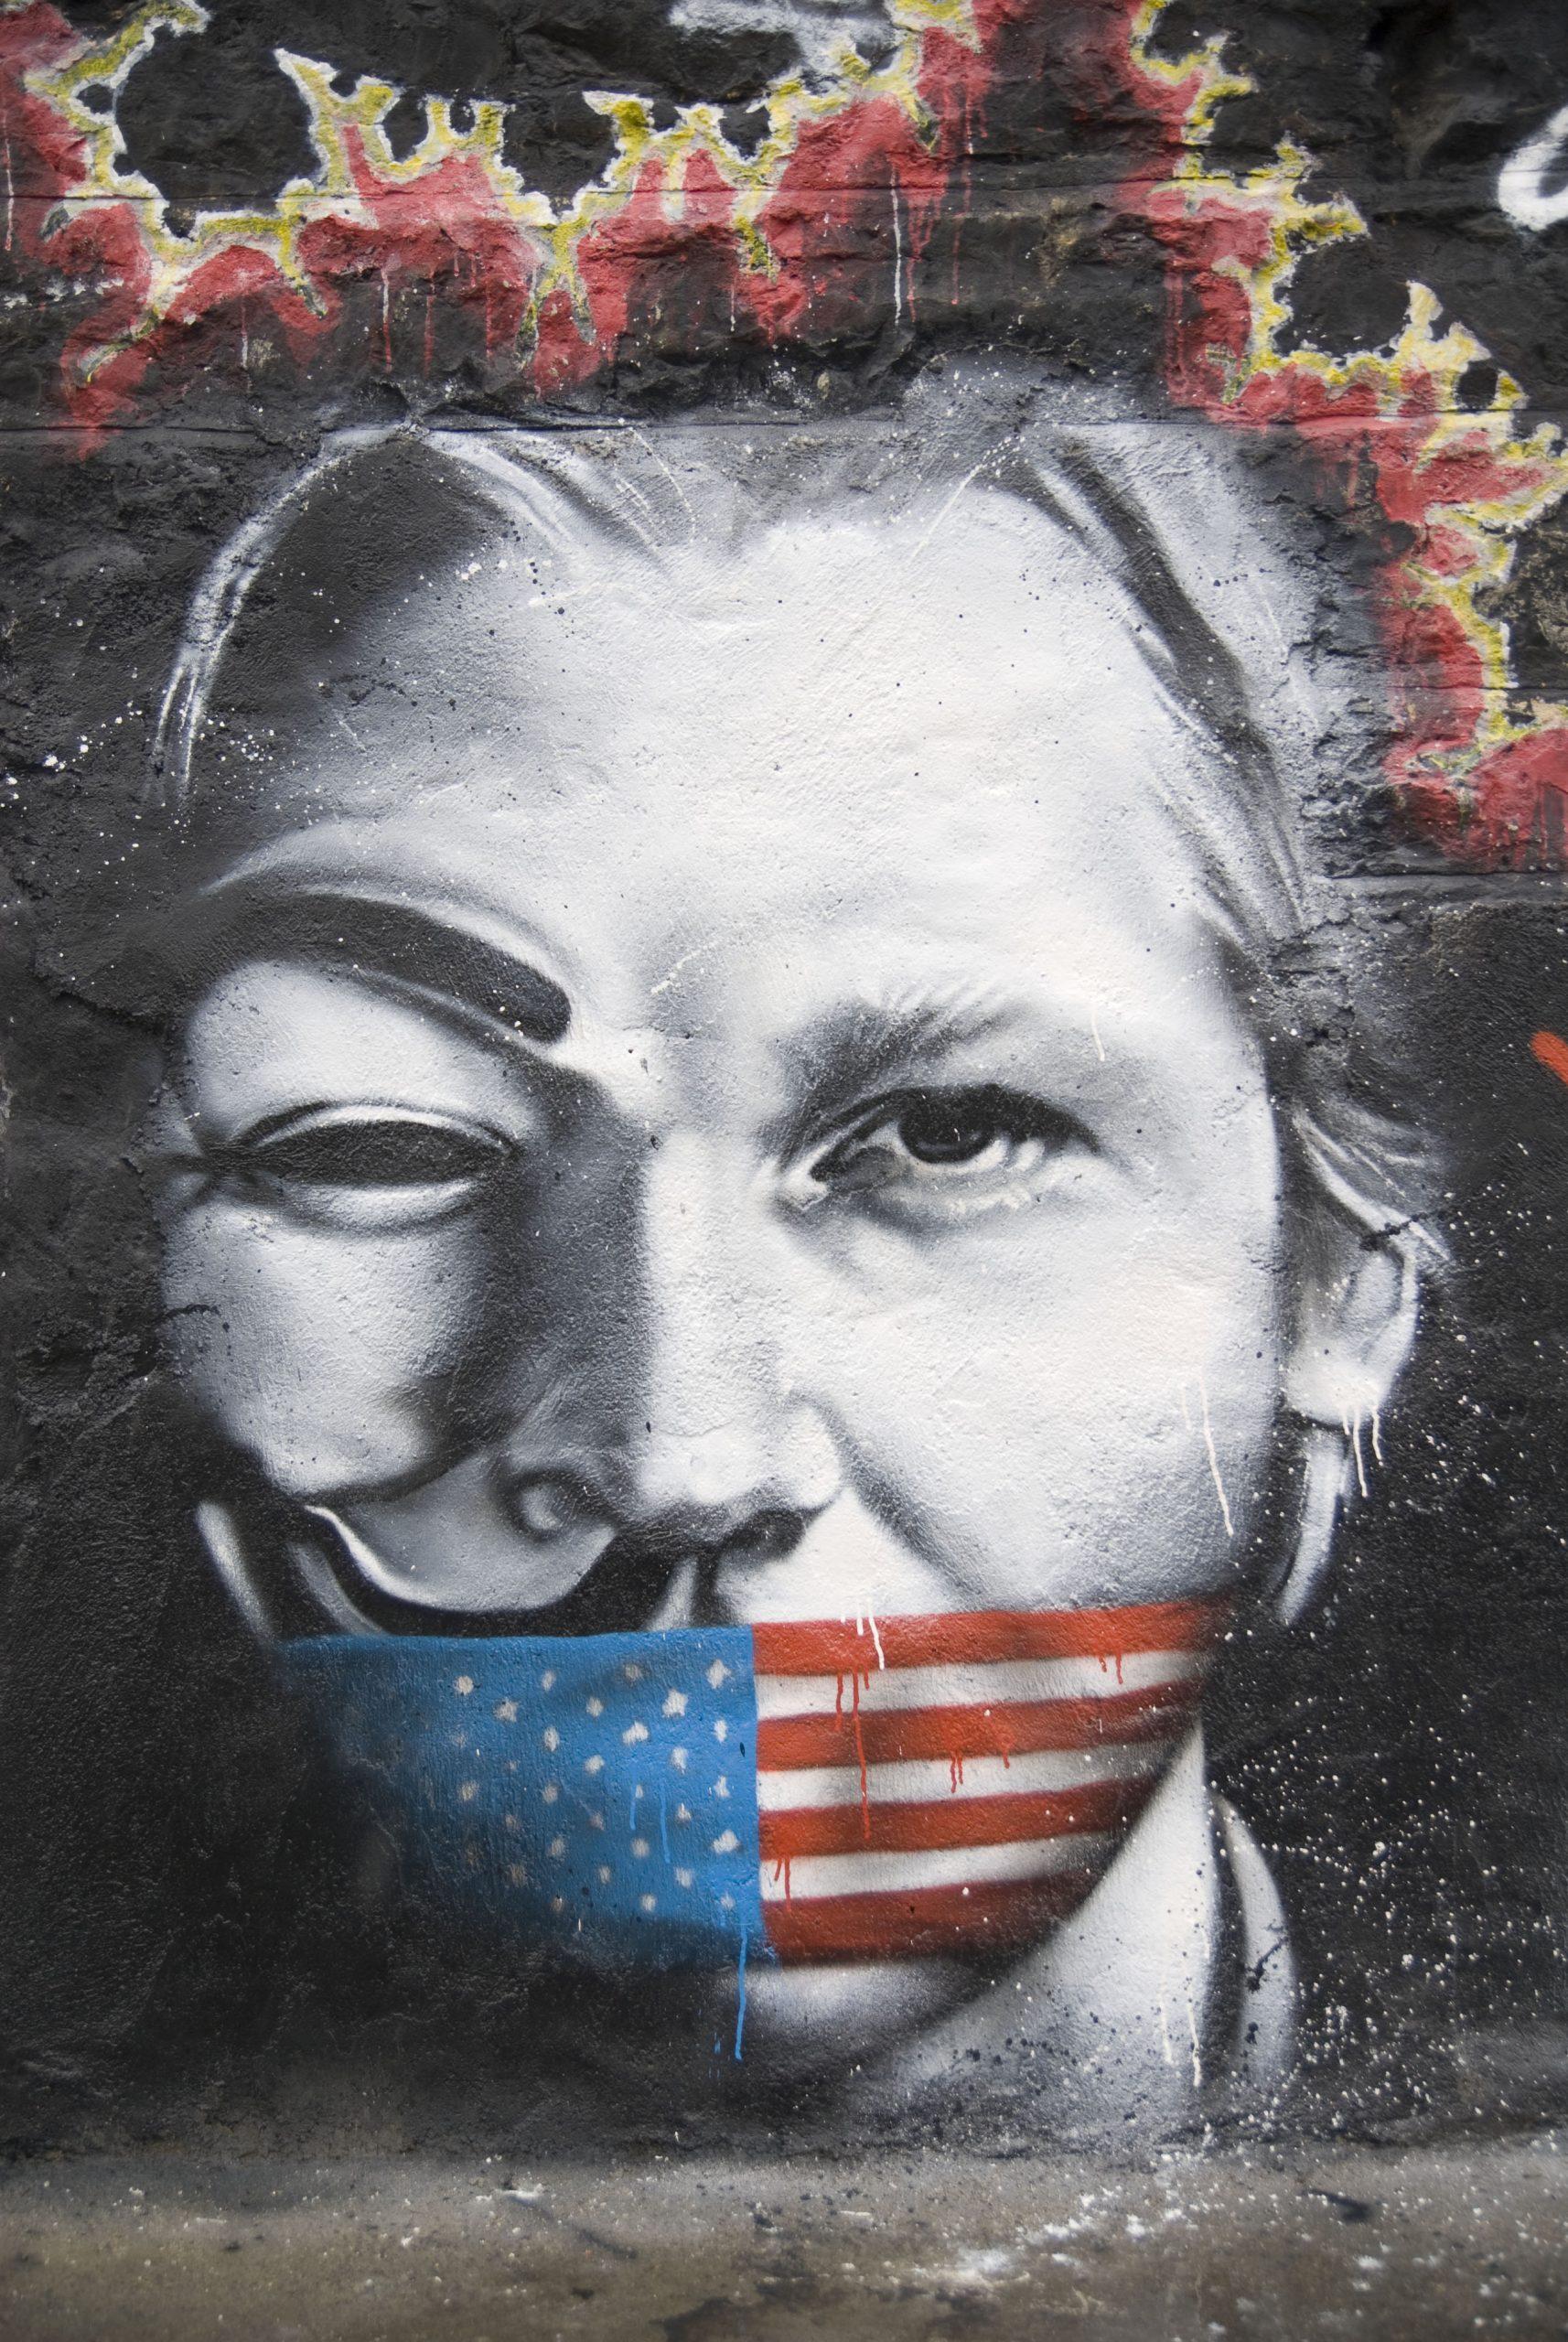 Julian Assange: britische Innenministerin billigt Auslieferung